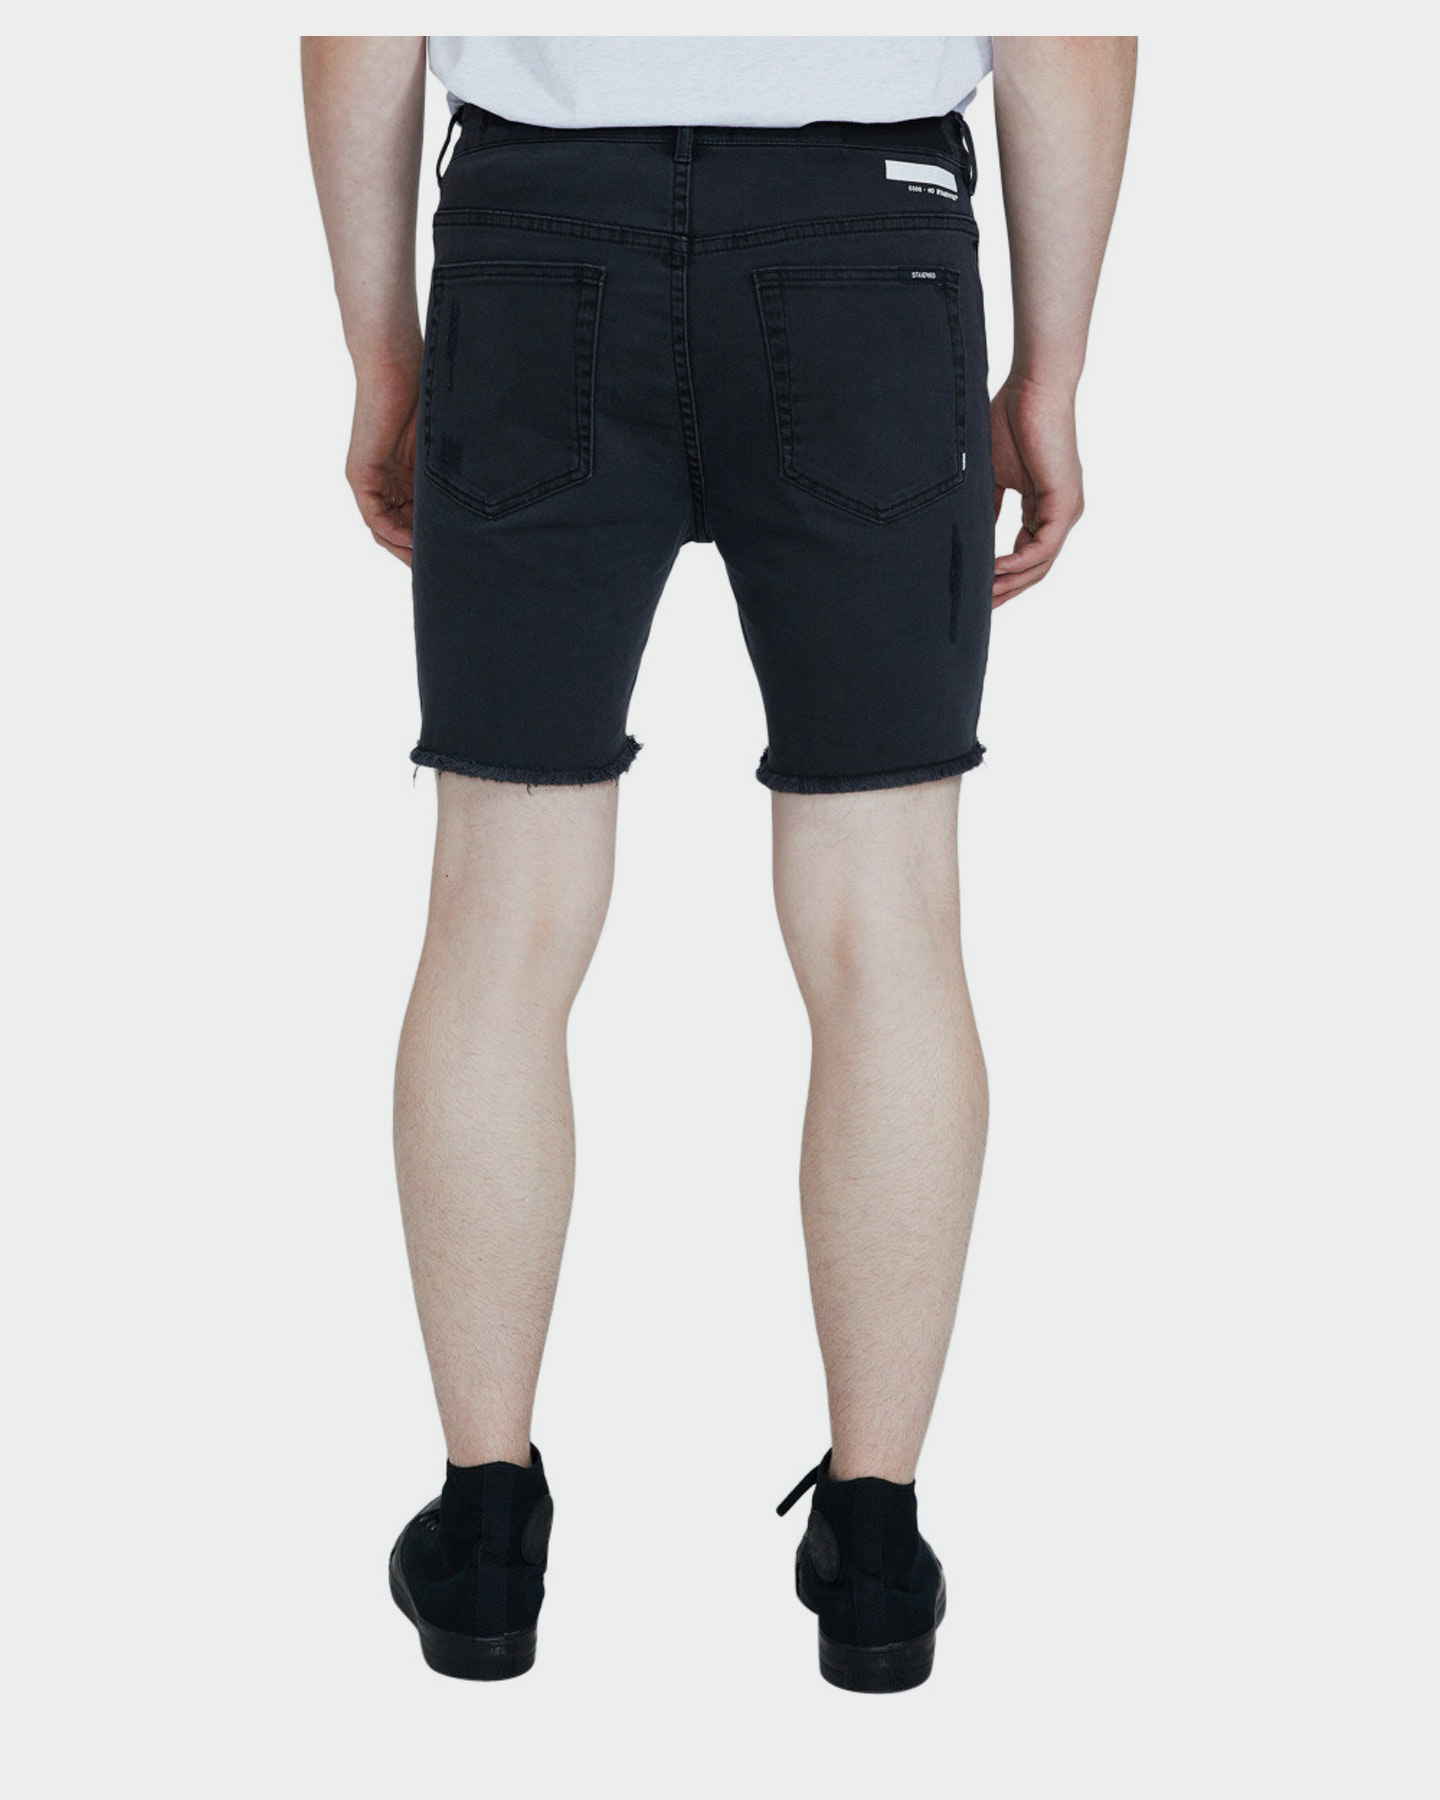 Standard Jean Co Em 2 Biker Shorts Base - Black | SurfStitch